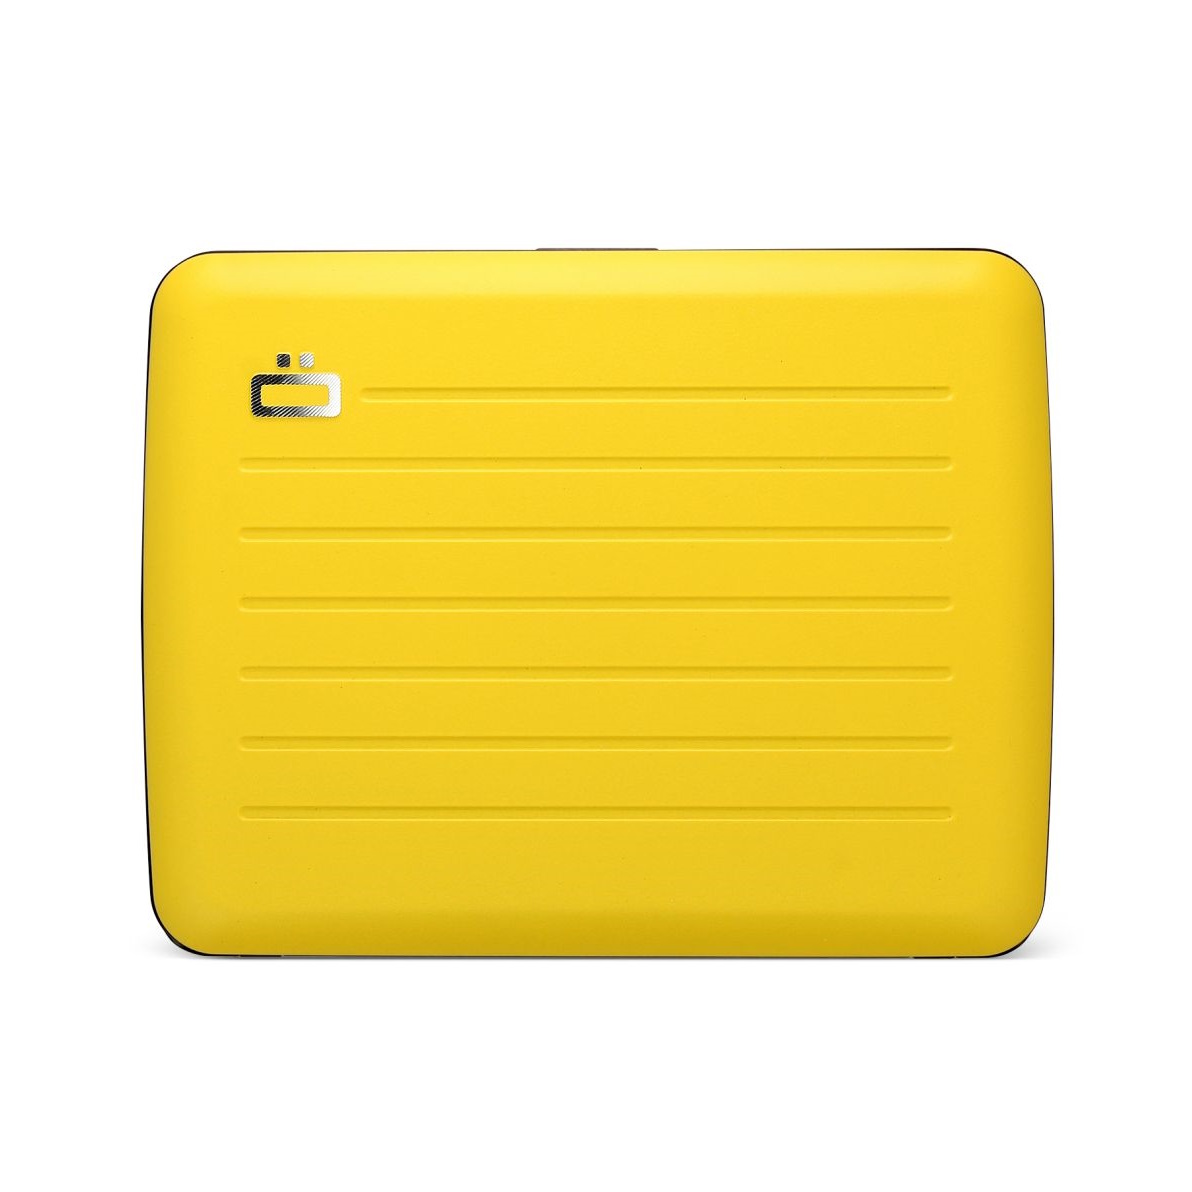 OGON ארנק אלומיניום הדור החדש V2.0 Large - צהוב מט